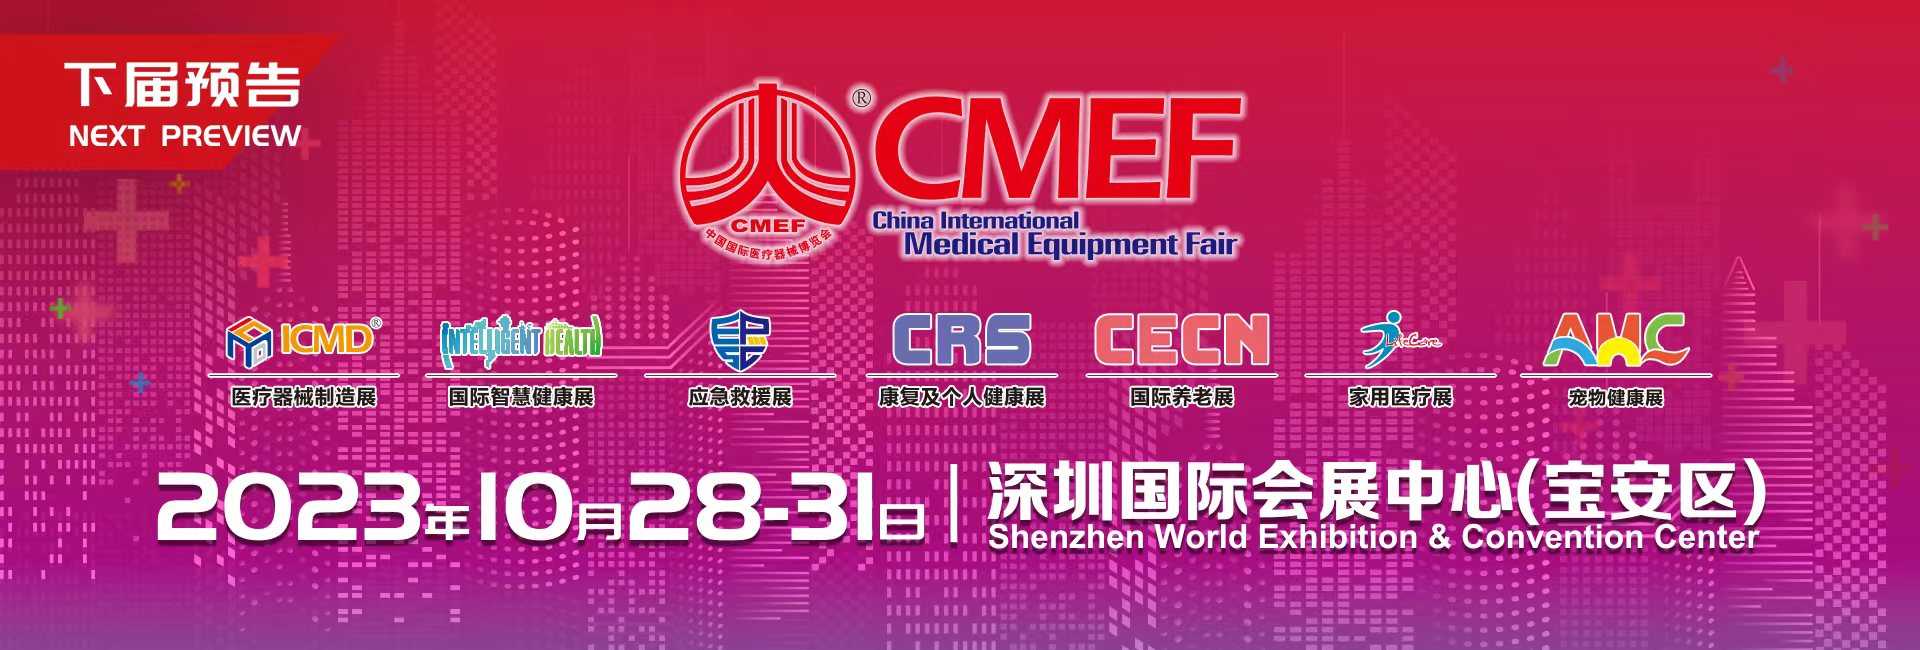 중국 국제 의료기기 박람회(China International Medical Equipment Fair, CMEF)